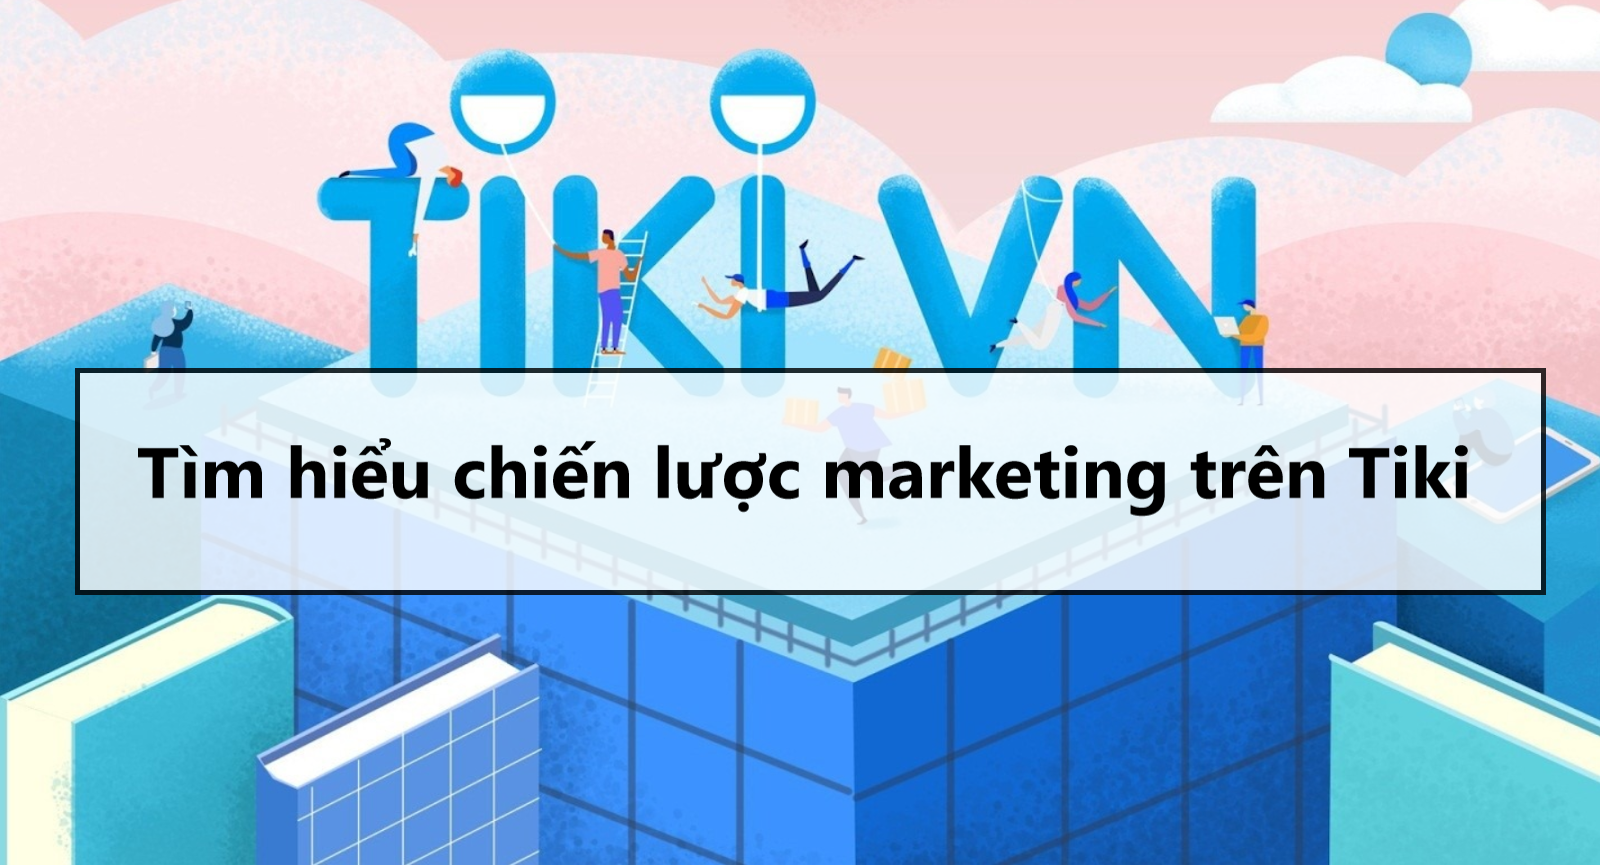 Tìm hiểu chiến lược marketing của Tiki